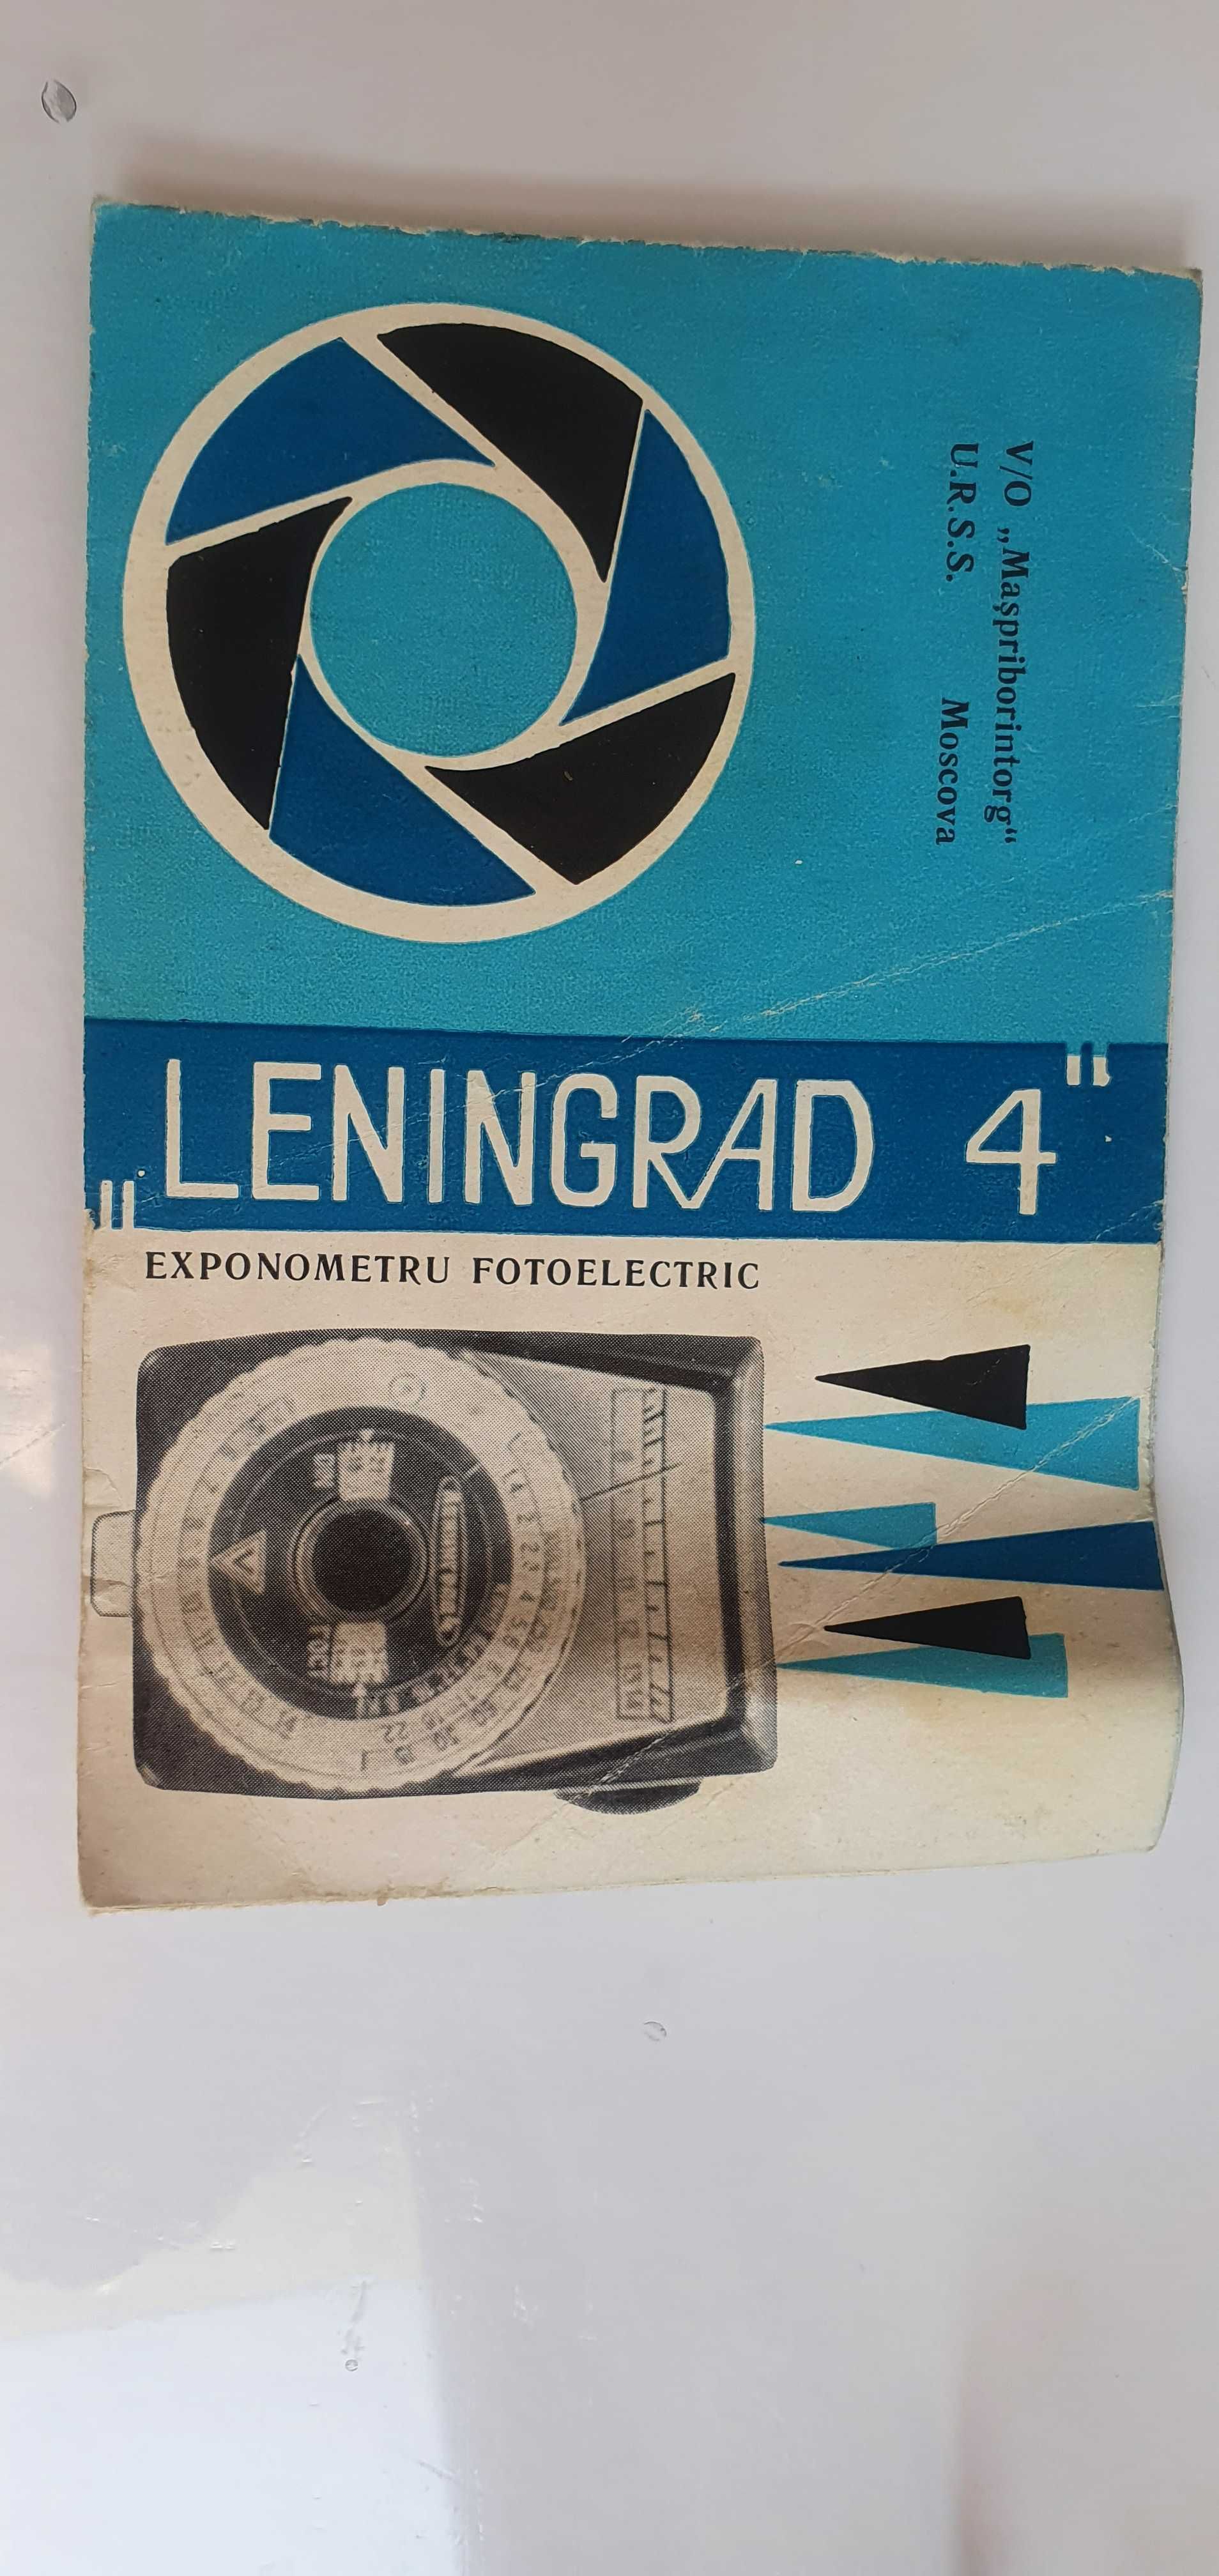 Antichitate, exponometru Leningrad 4, piesa colectie